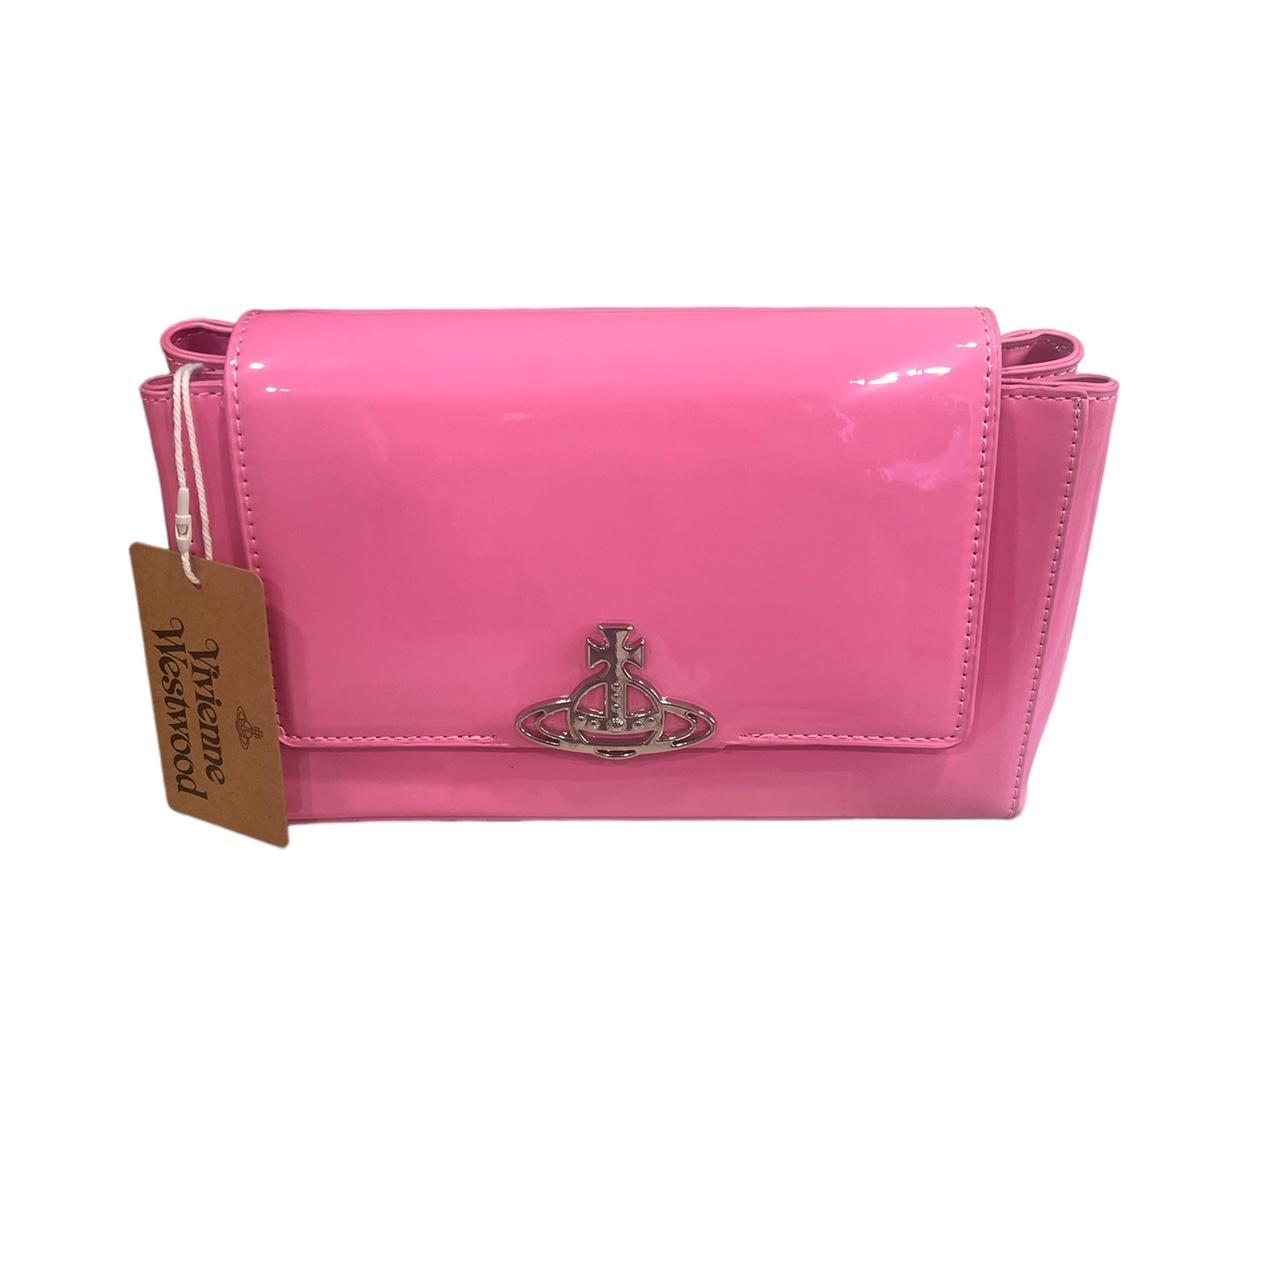 Vivienne Westwood Pink Shoulder Bag Authentic... - Depop